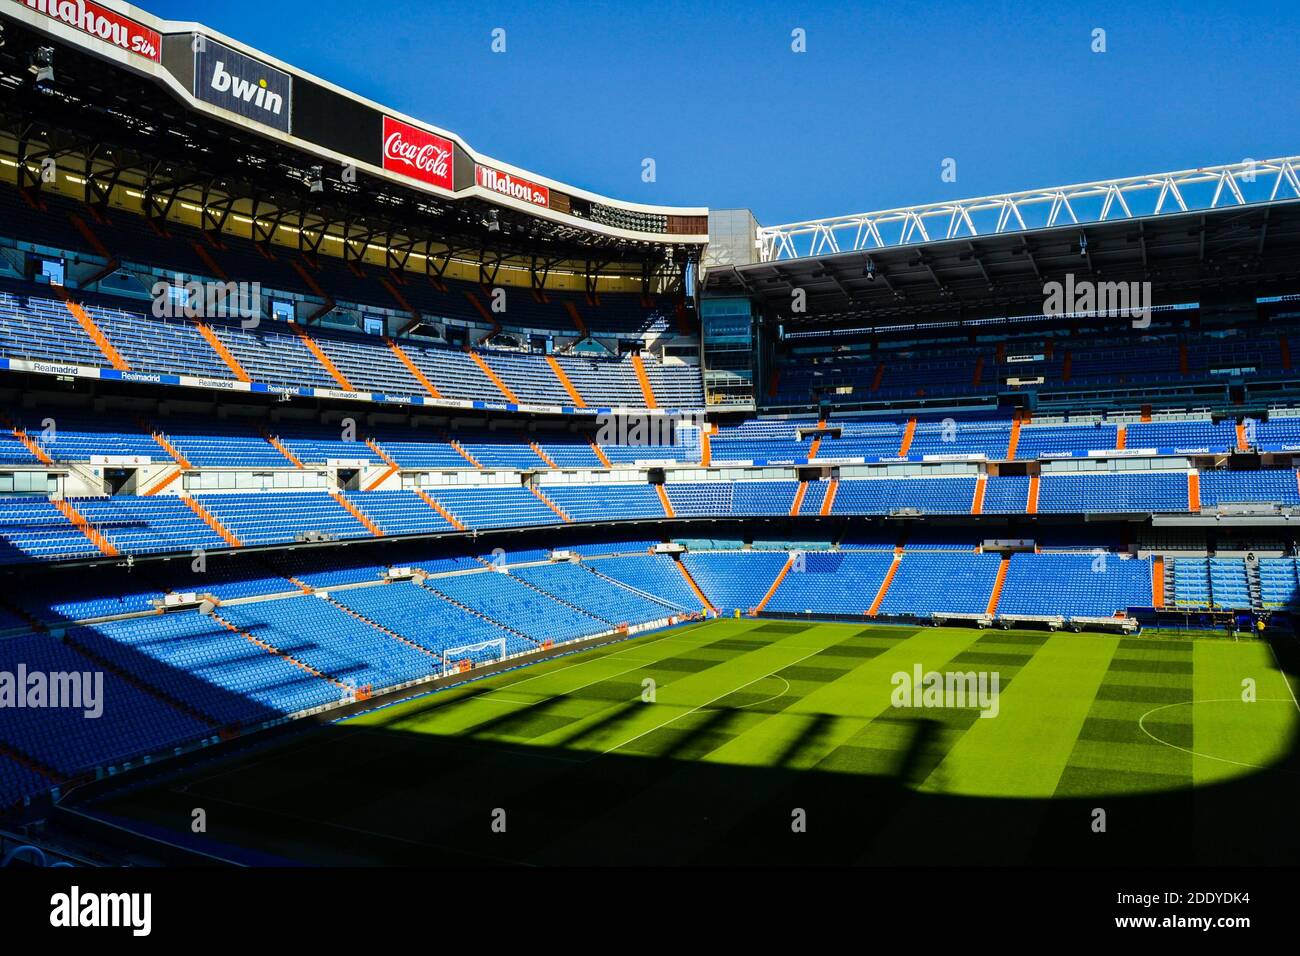 España, Madrid, 17.02.2012. Totalmente vacío del estadio Bernabeu del club de fútbol del Real Madrid durante el día soleado. Foto de stock